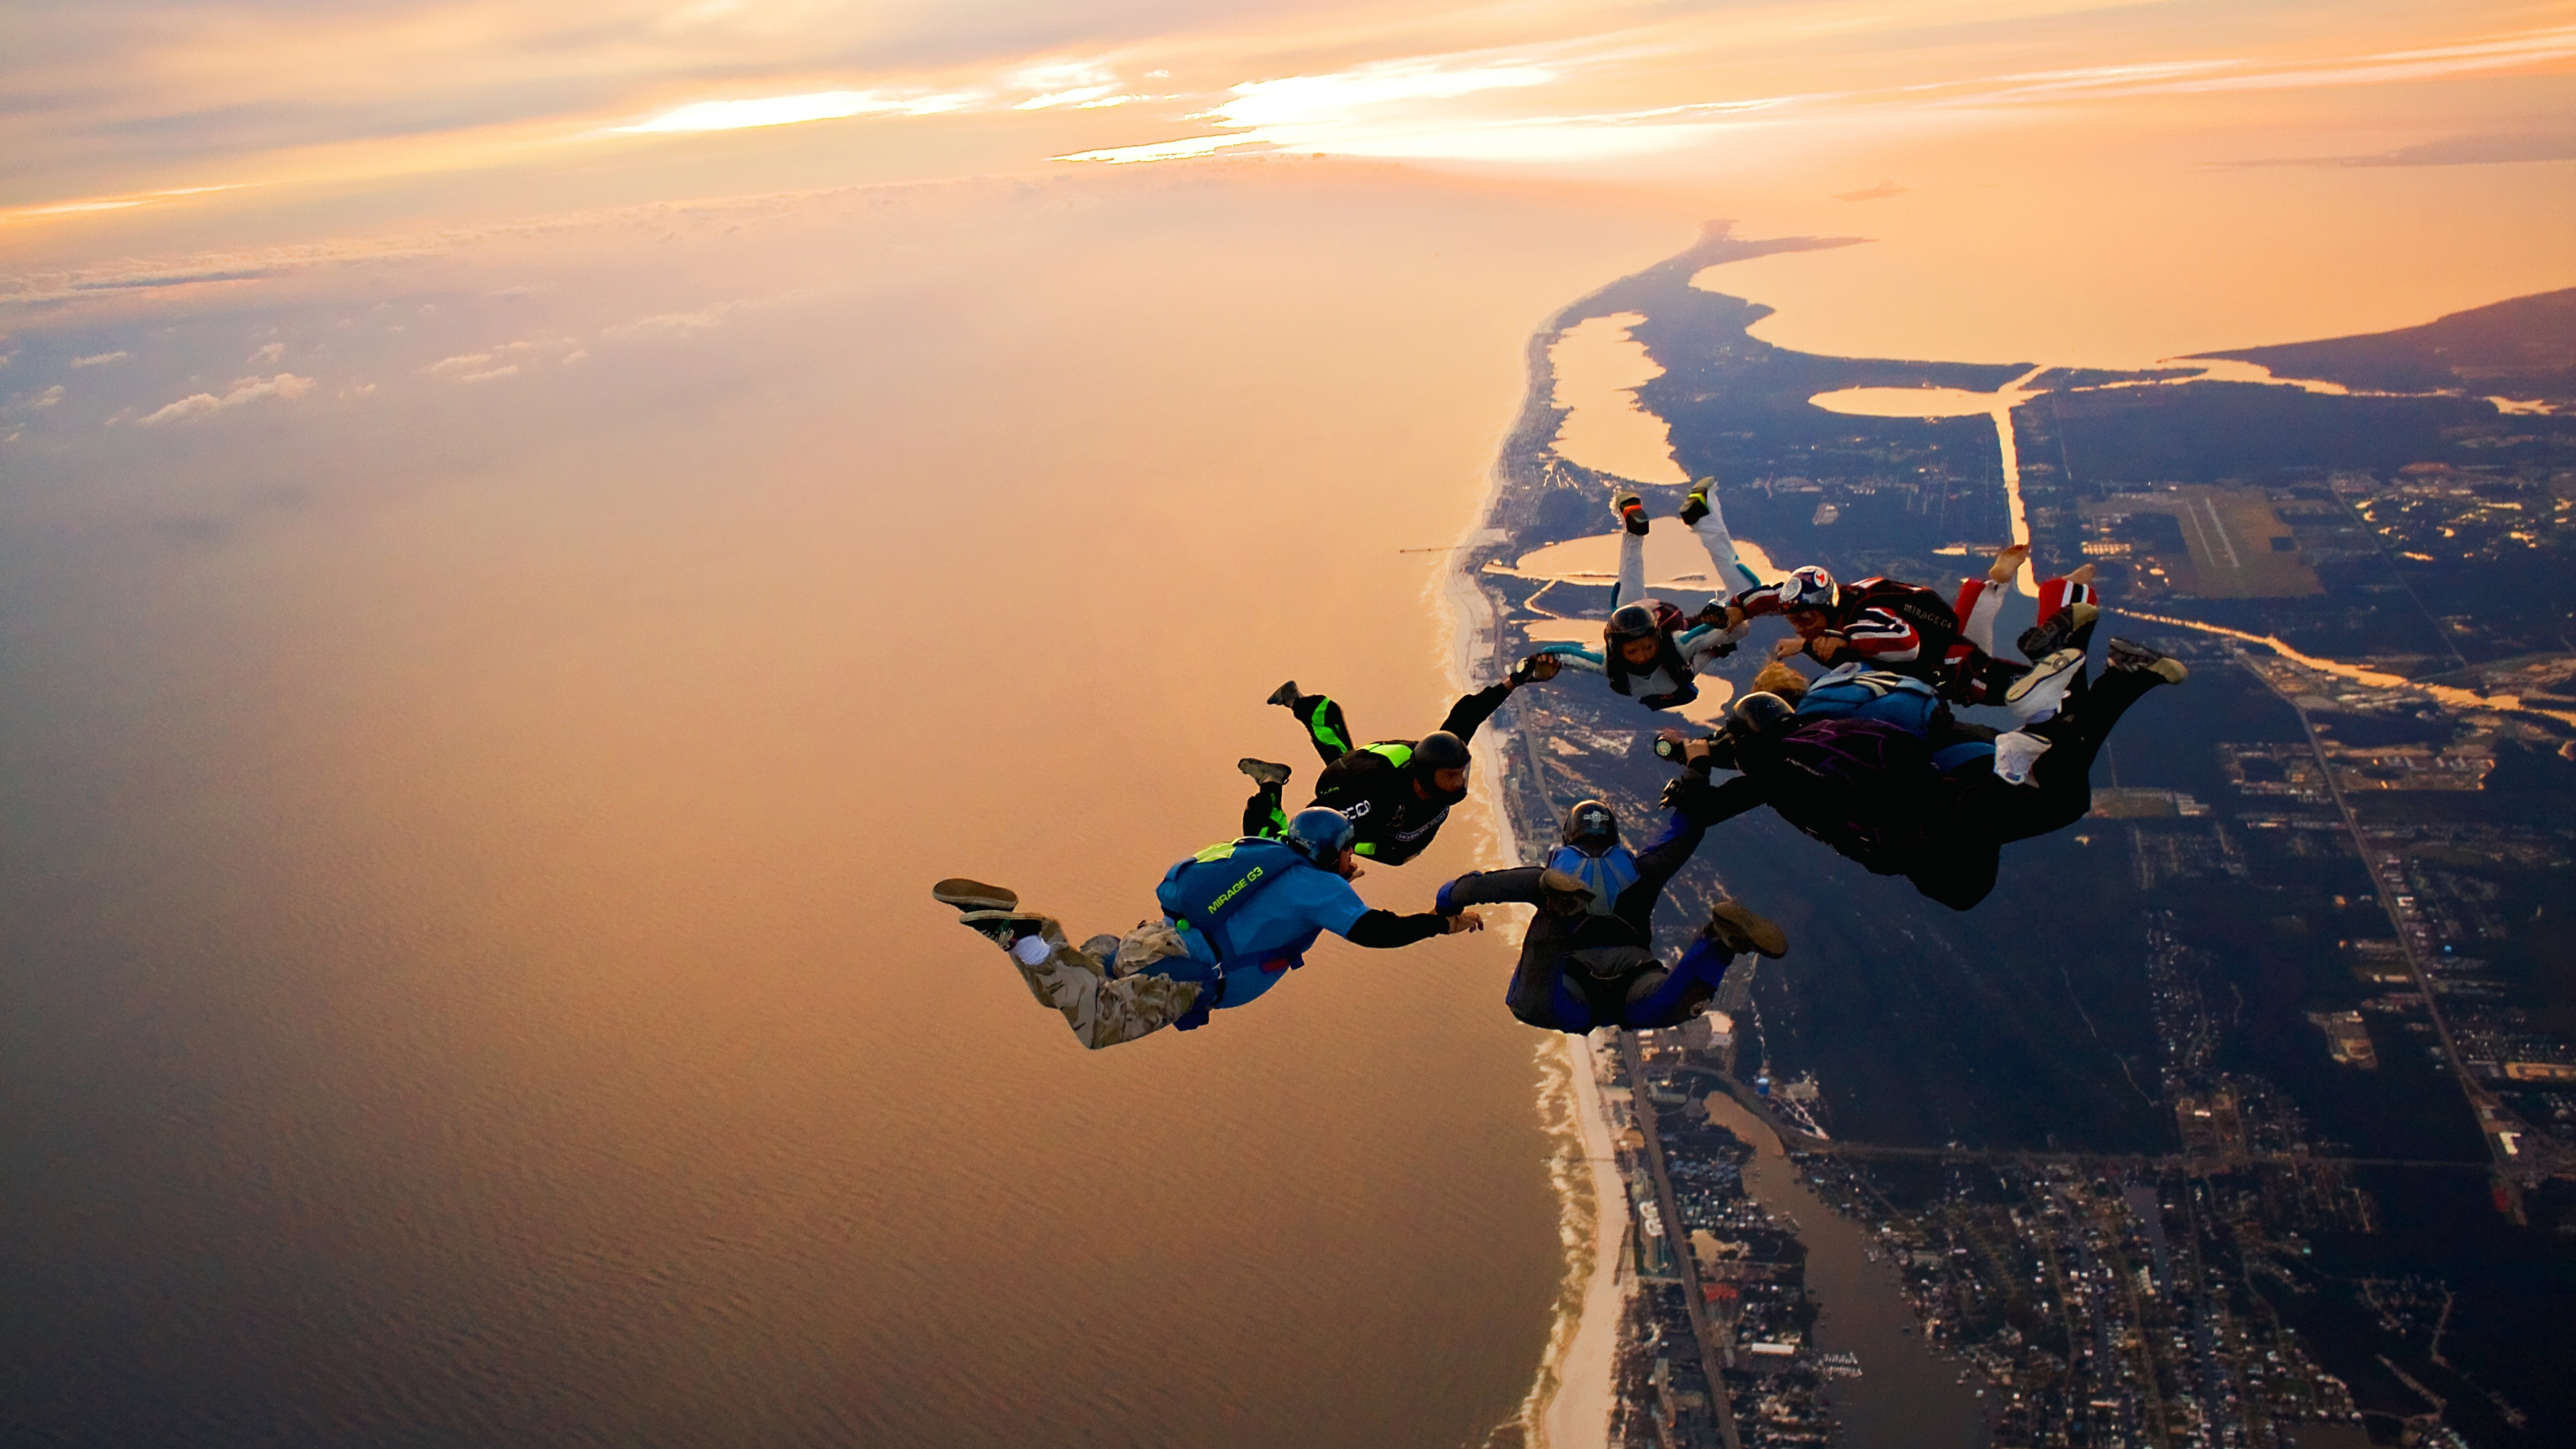 Обои прыжки с парашютом на закате, парашютный спорт, парашют, экстремальный вид спорта, воздушные виды спорта в разрешении 3840x2160